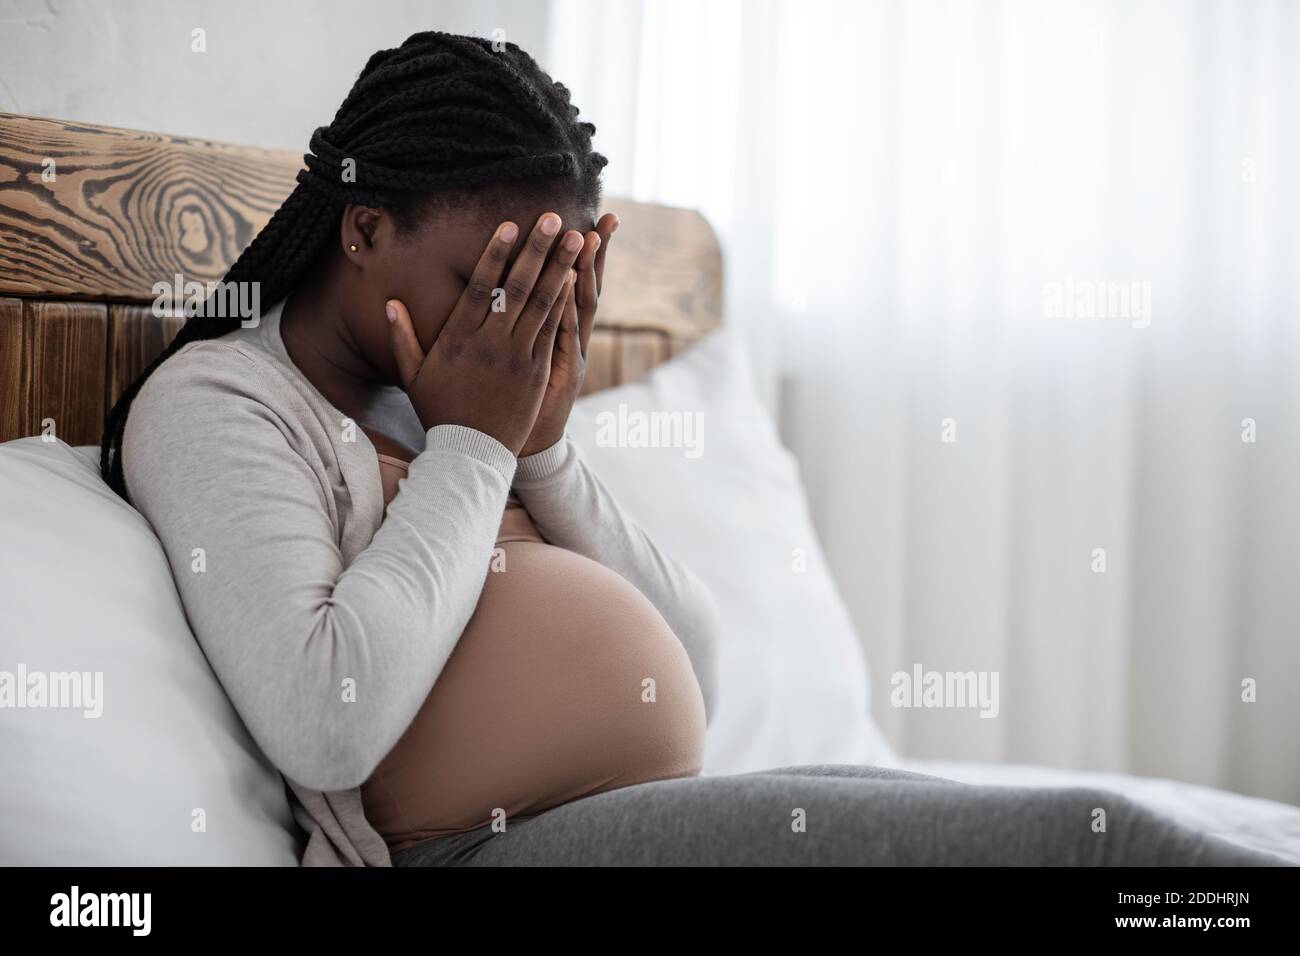 Changements émotionnels pendant la grossesse. Contrarié Femme enceinte noire couvrant le visage avec les mains Banque D'Images